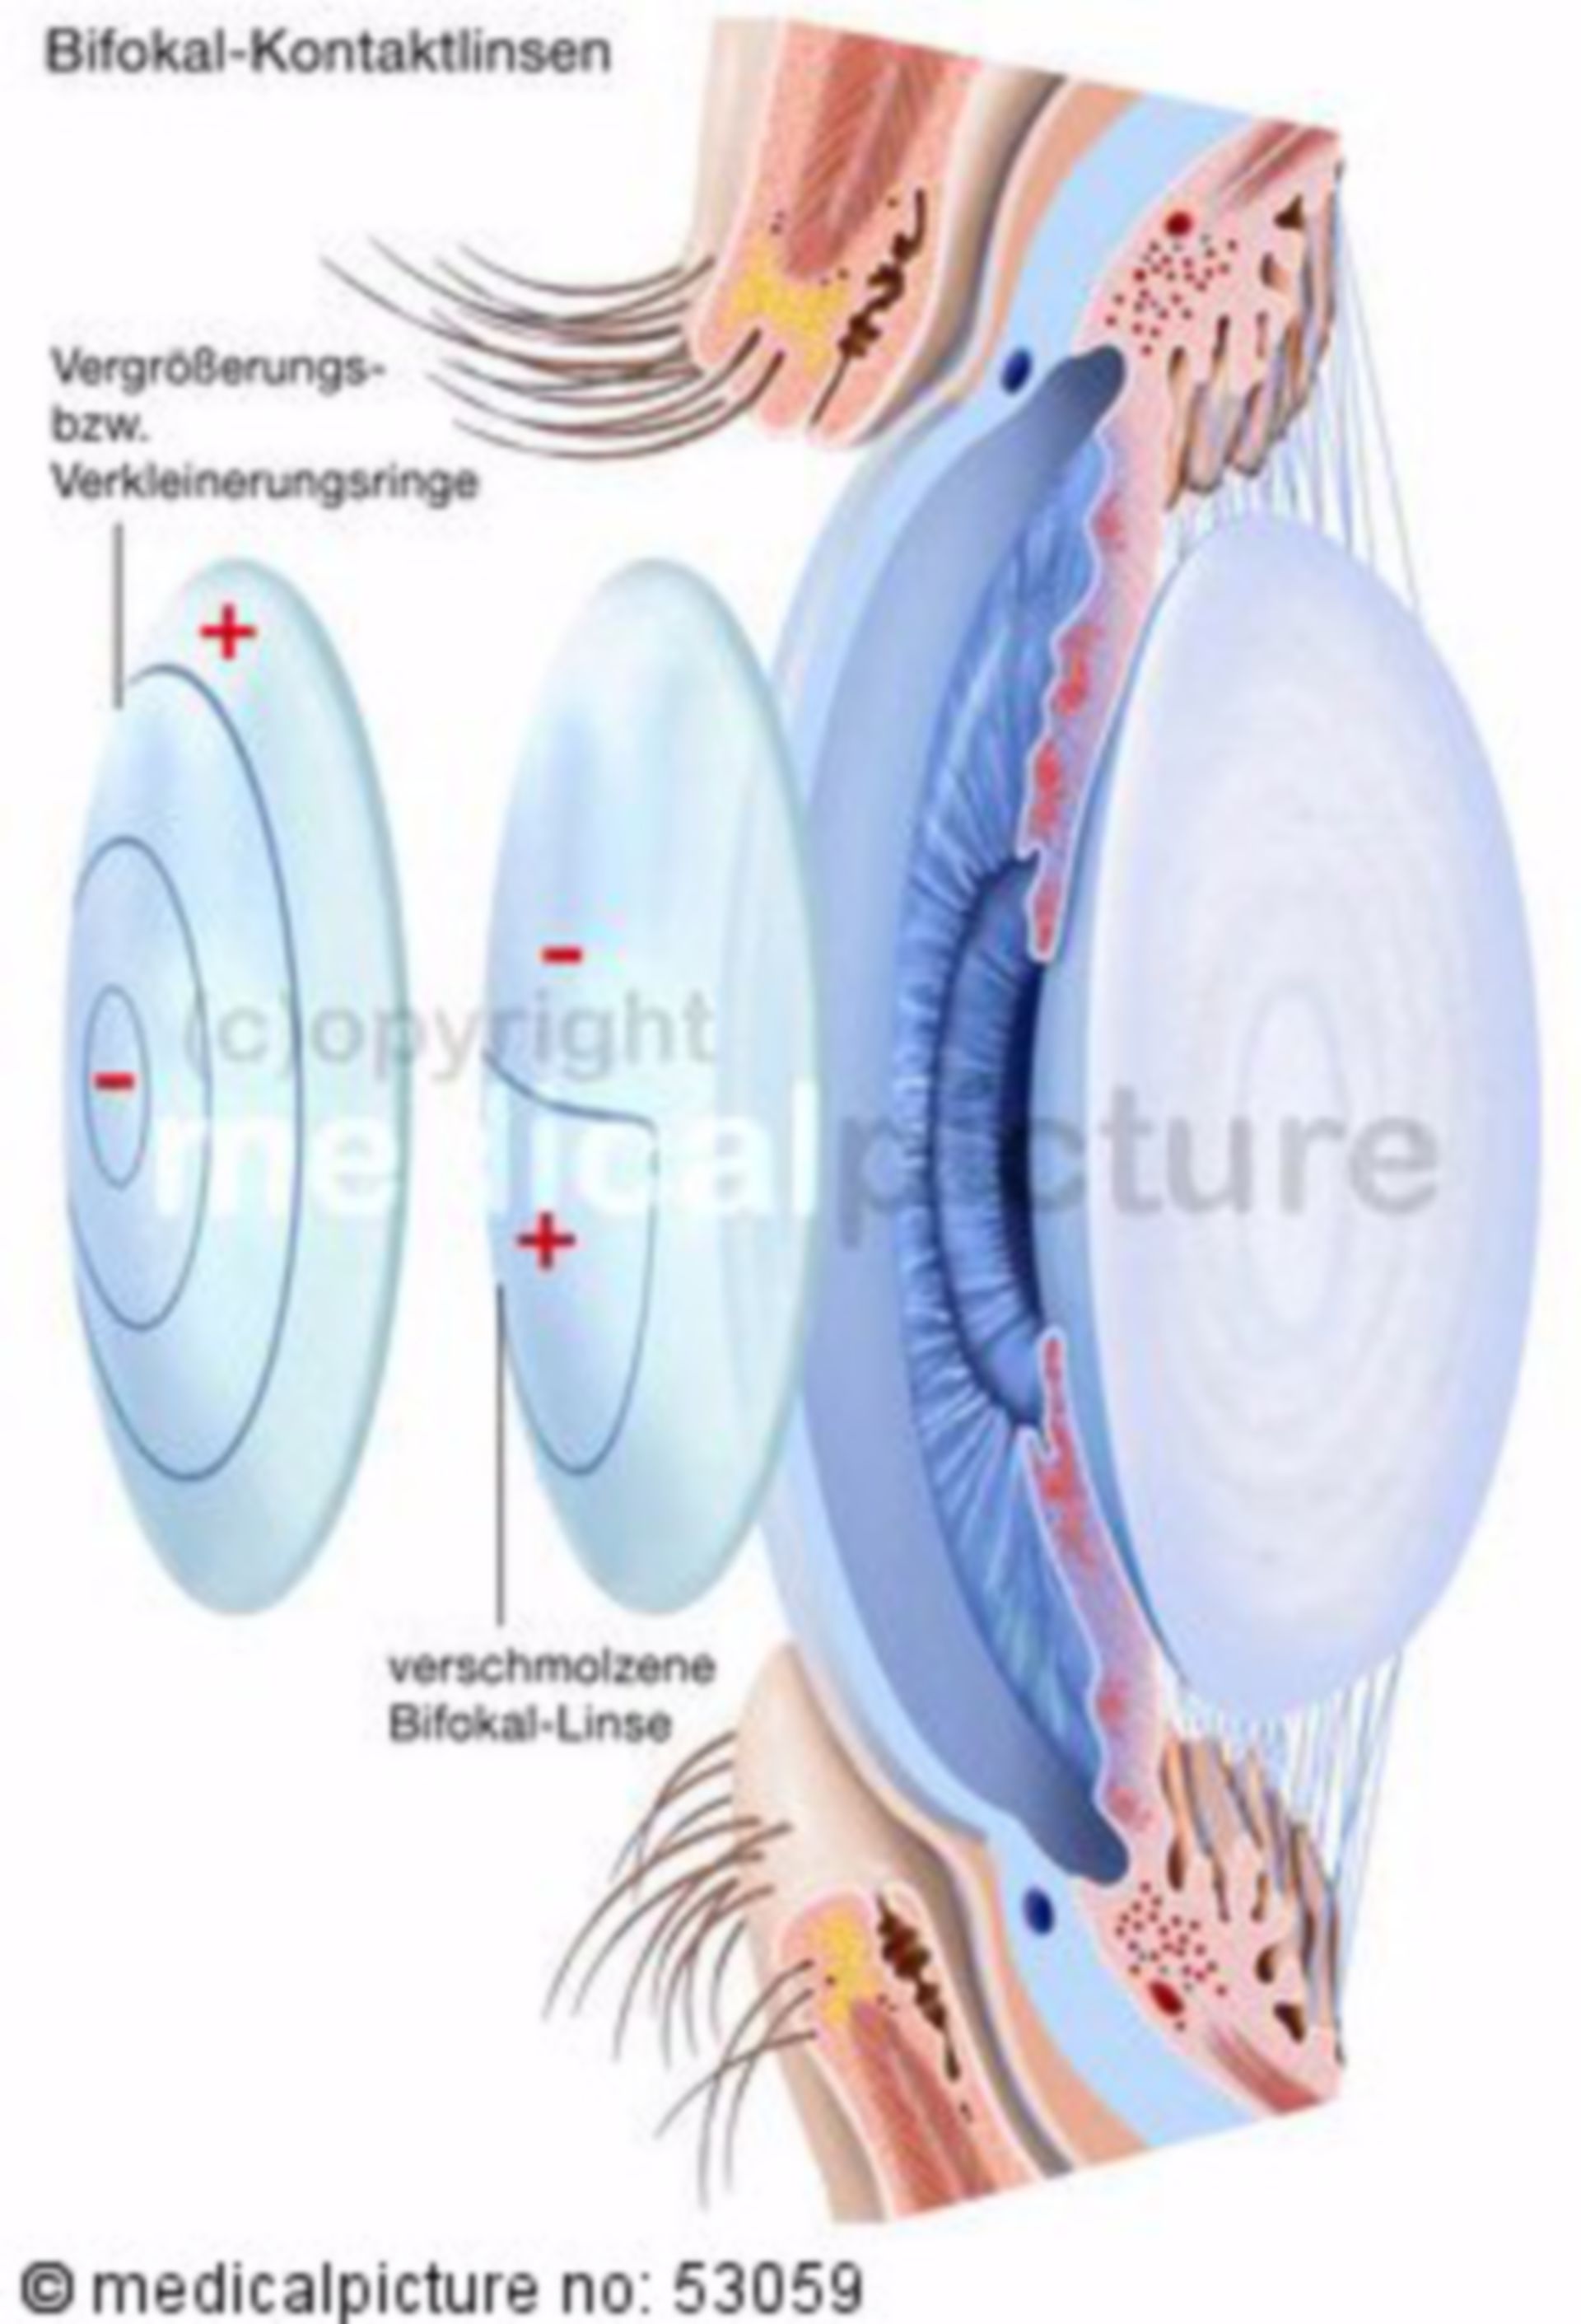  Bifokale Kontaktlinsen 
